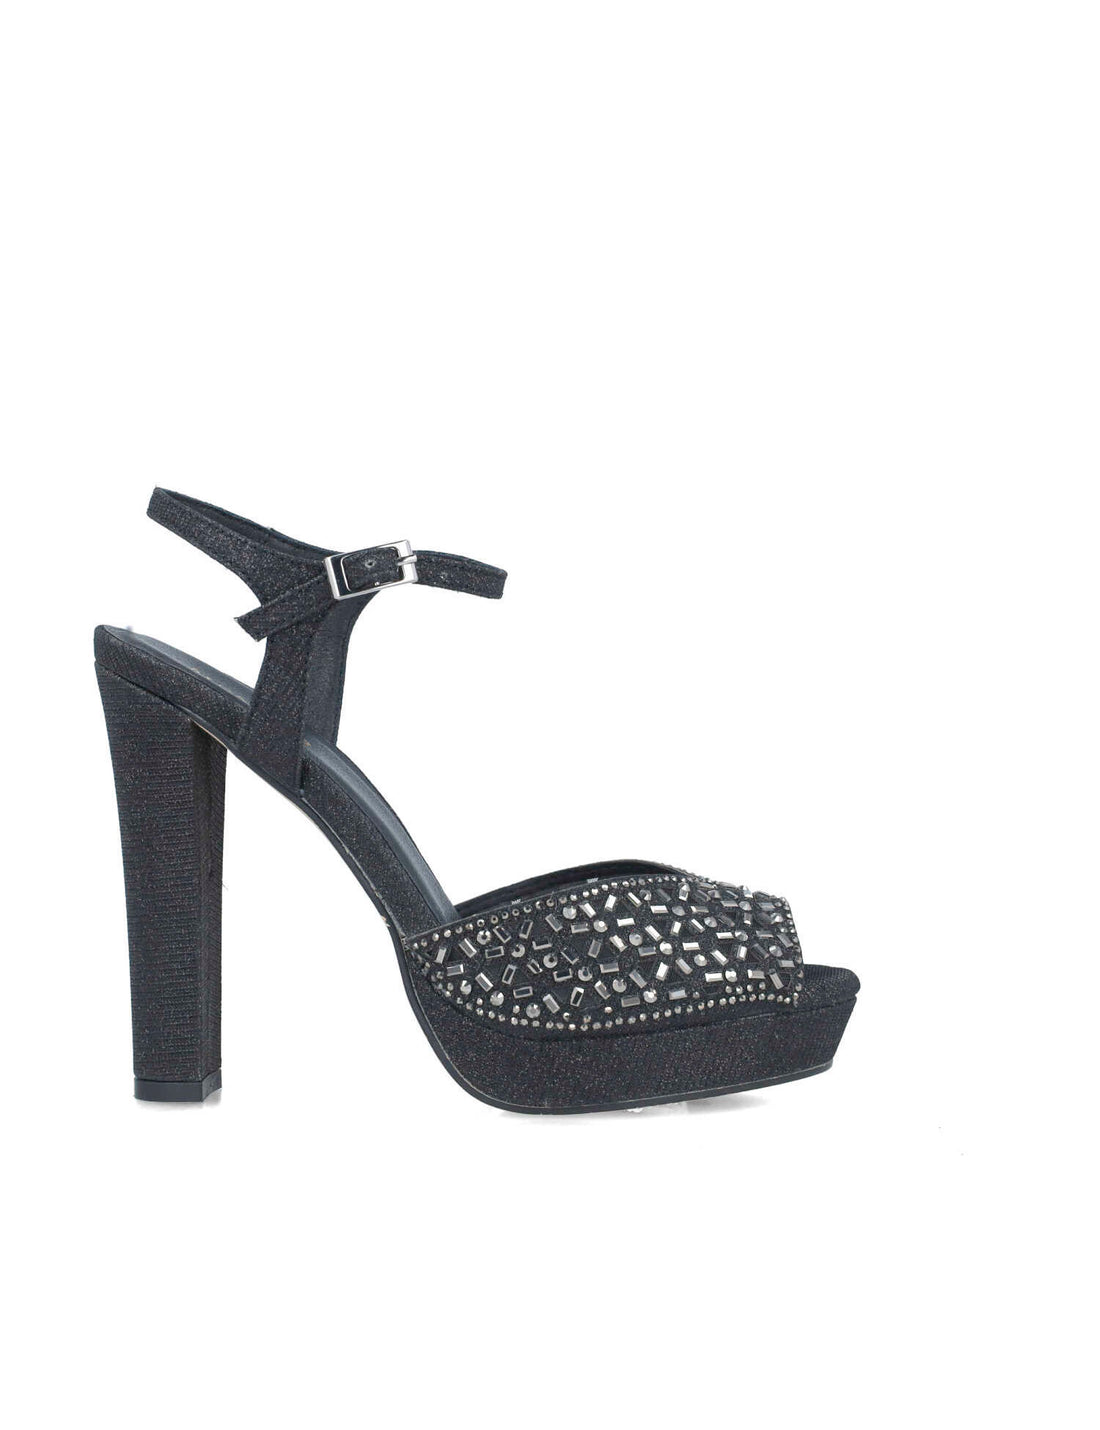 Embellished Platform Sandals With Ankle Strap_25149_01_01